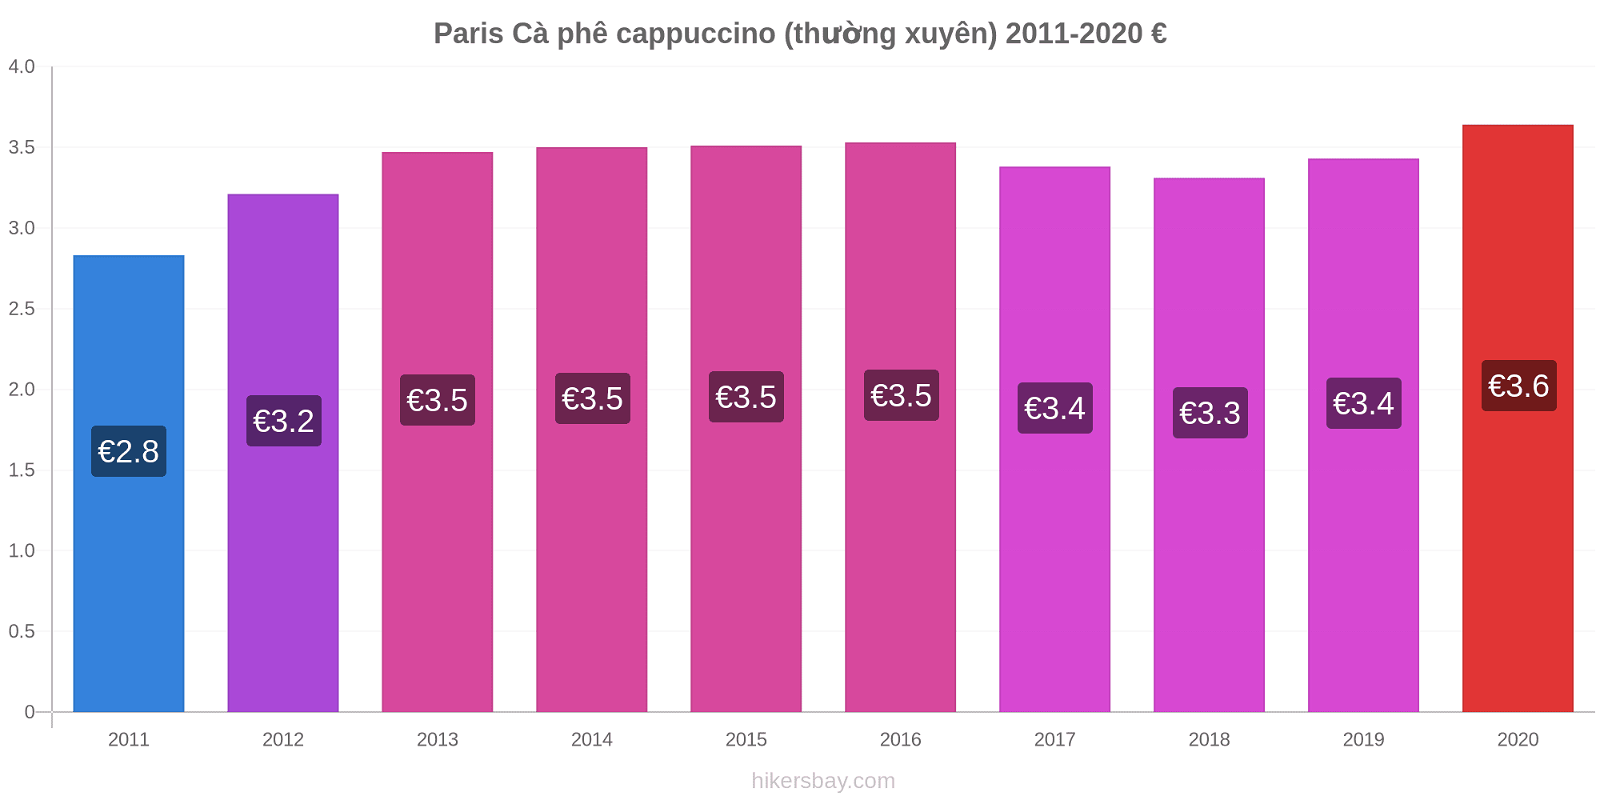 Paris thay đổi giá Cà phê cappuccino (thường xuyên) hikersbay.com